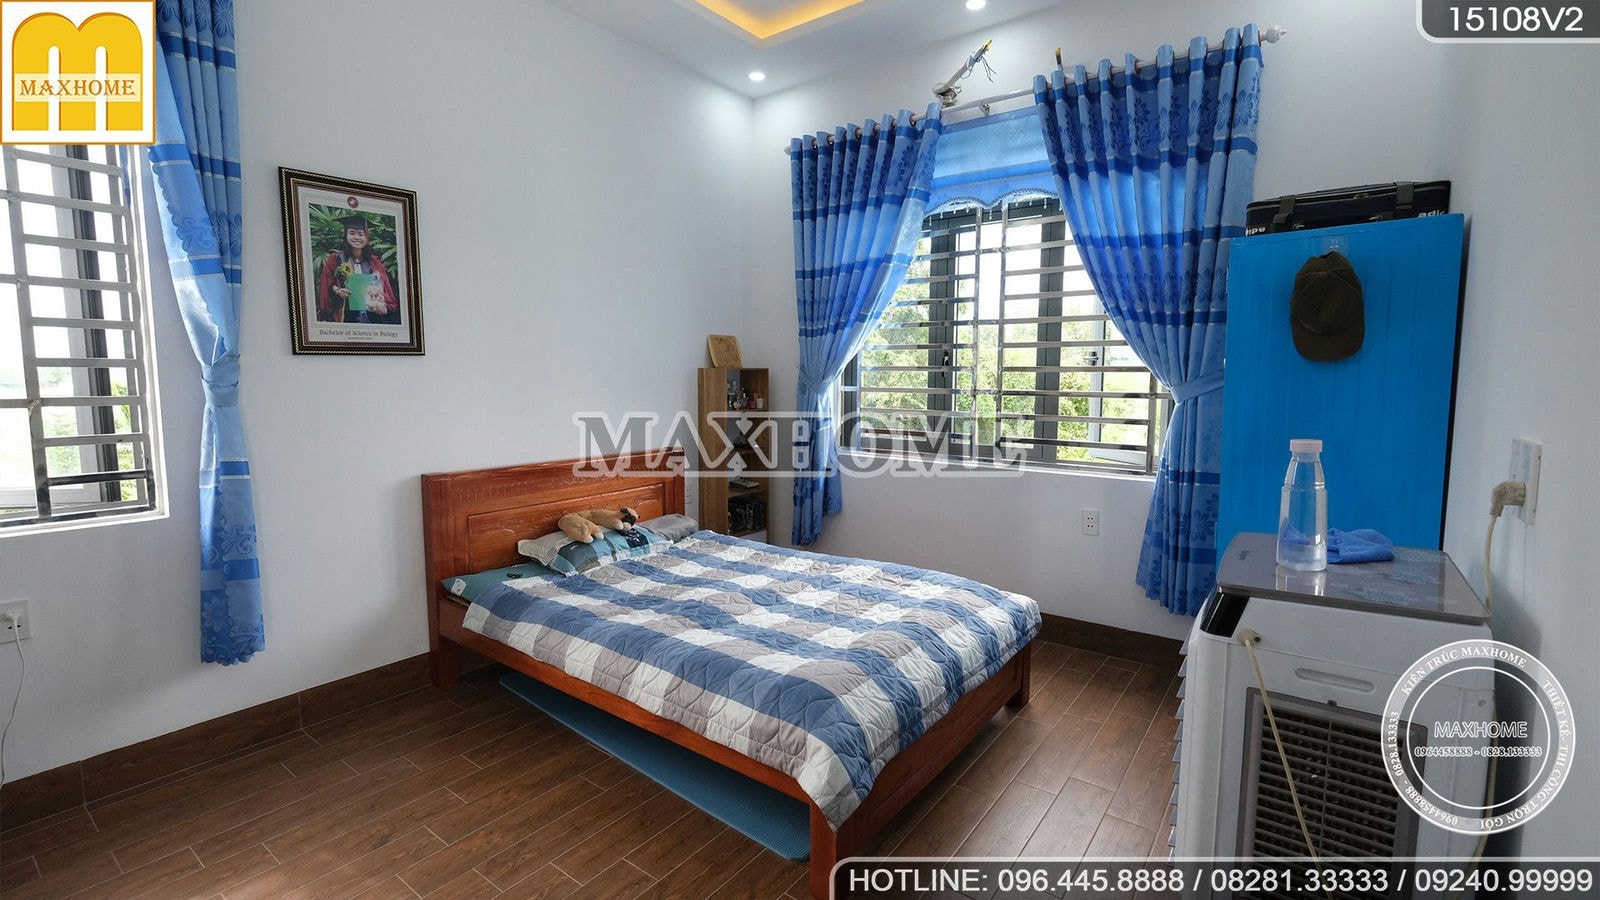 Maxhome bố trí nội thất tinh tế cho căn nhà 2 tầng ở Tây Ninh | MH01343